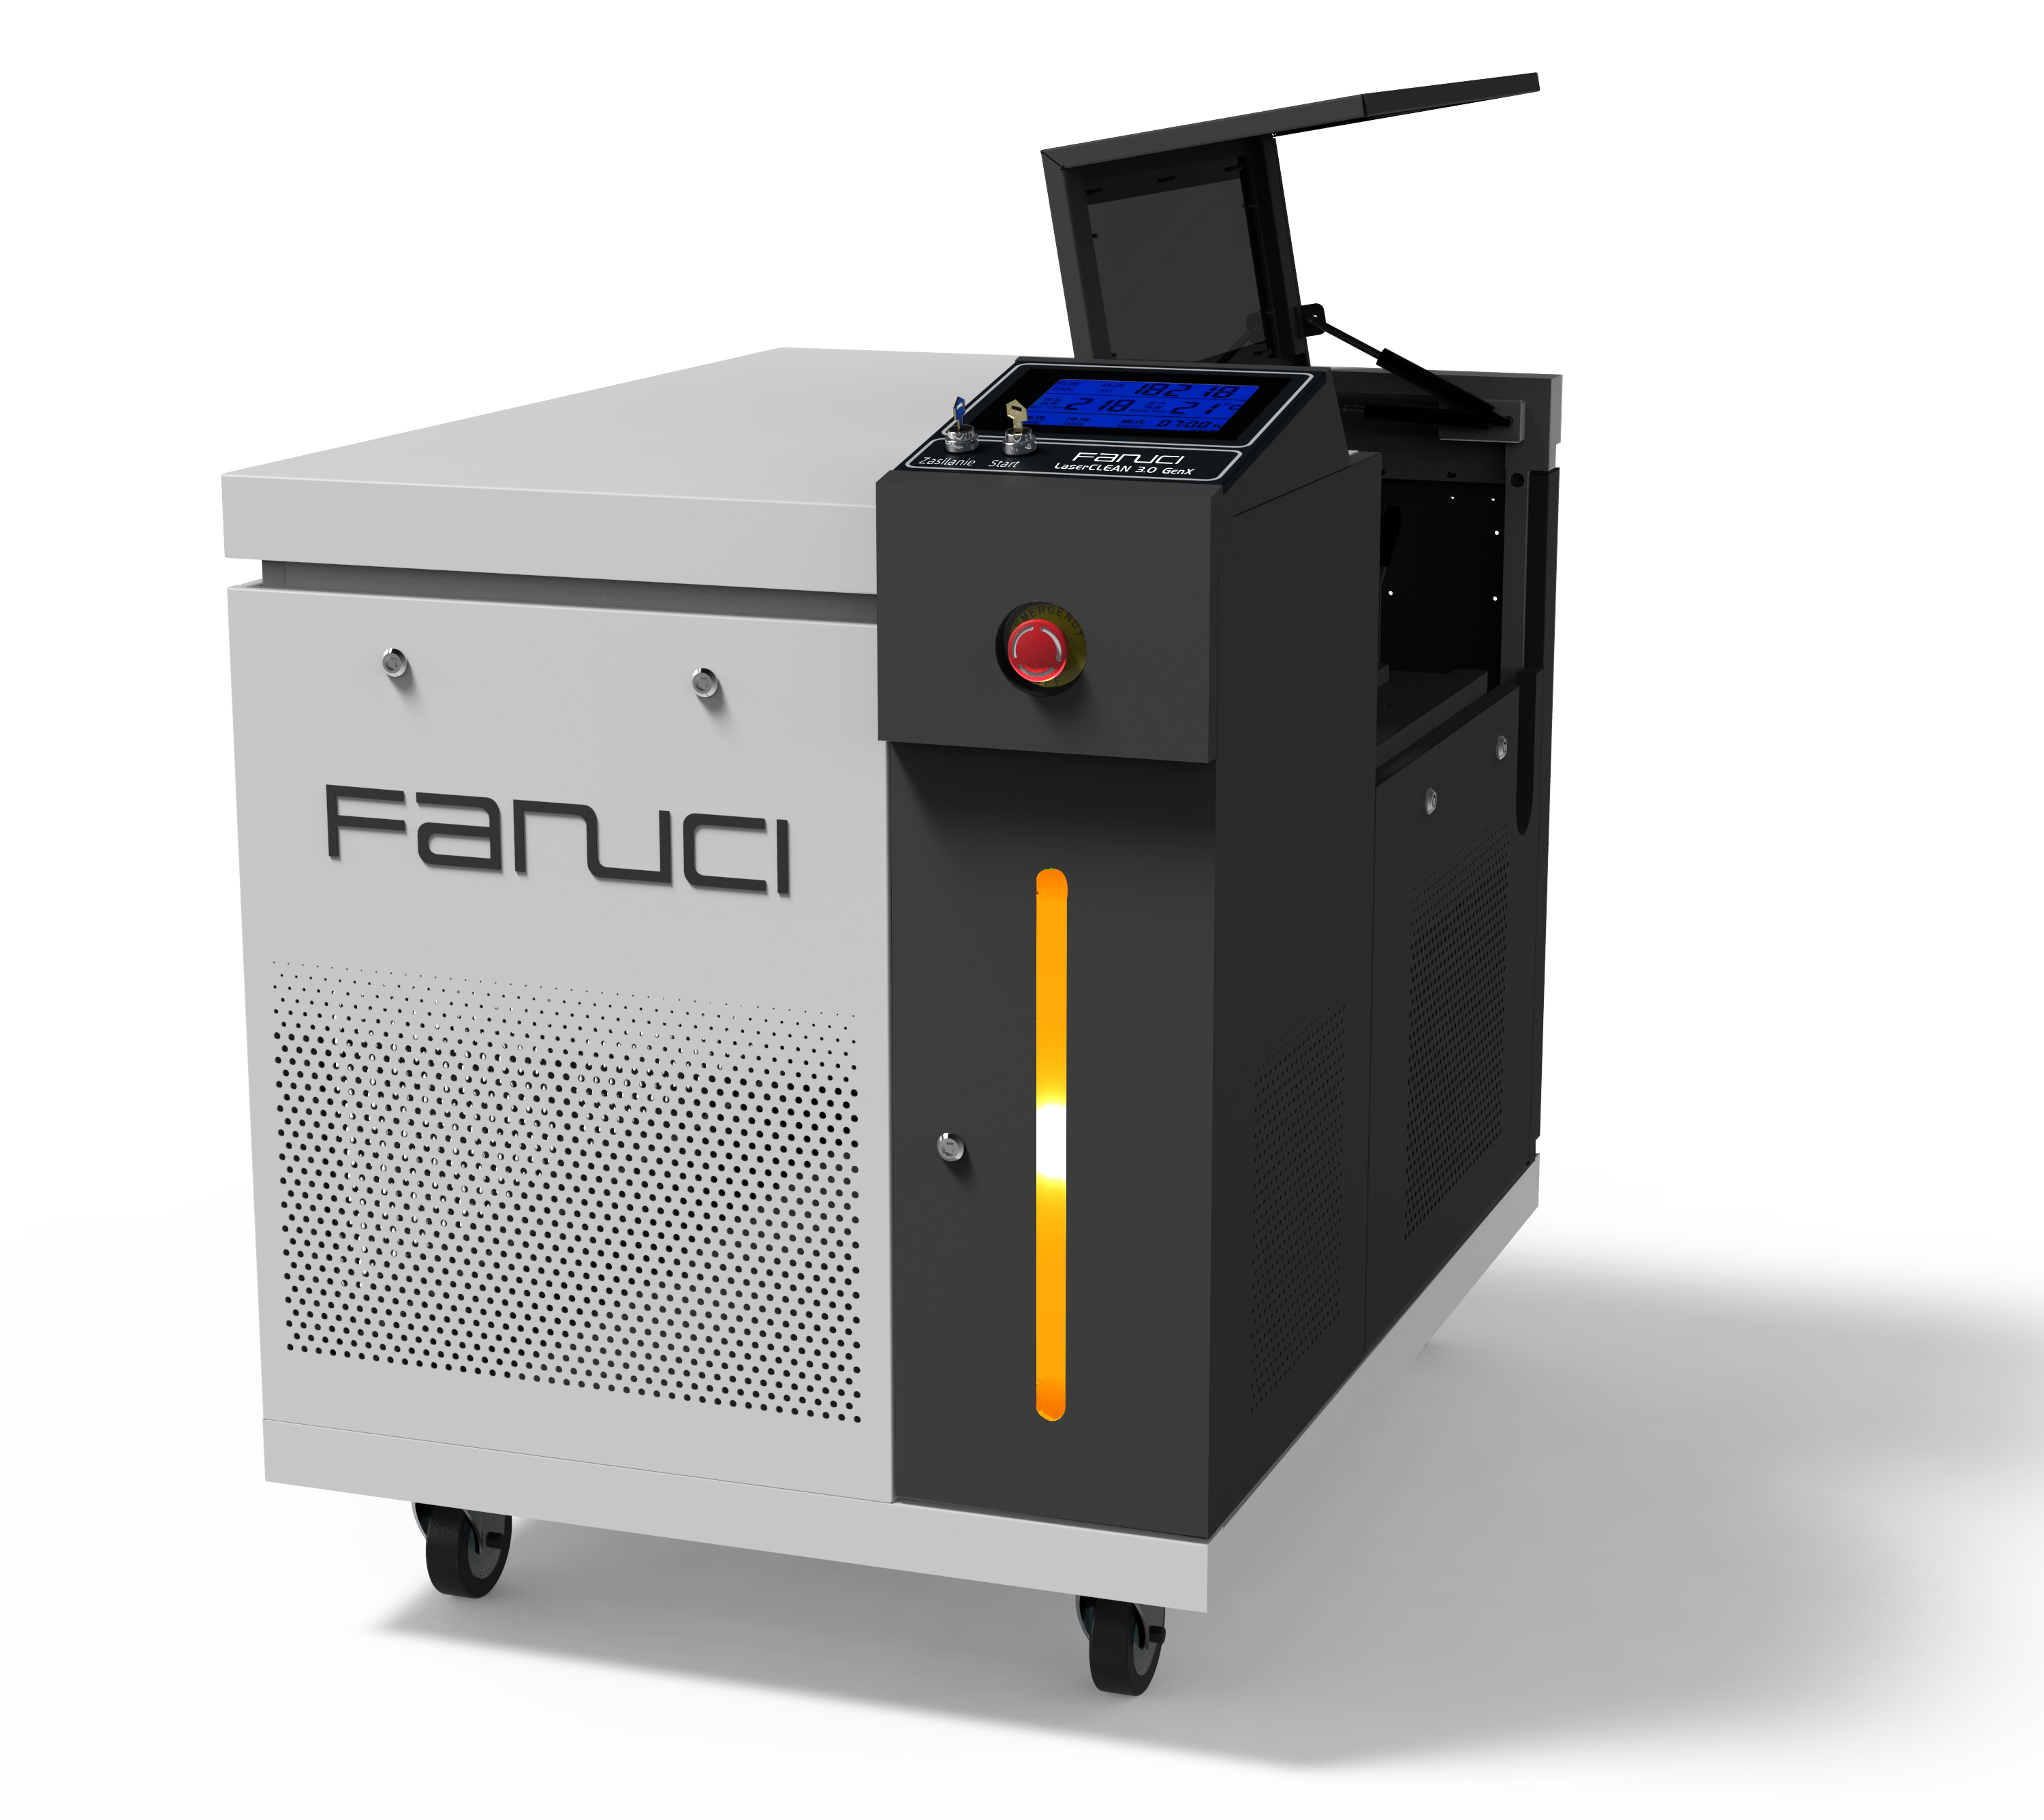 FANUCI® Pro 콤팩트 레이저 용접기 포인원 유럽으로 배송 예정